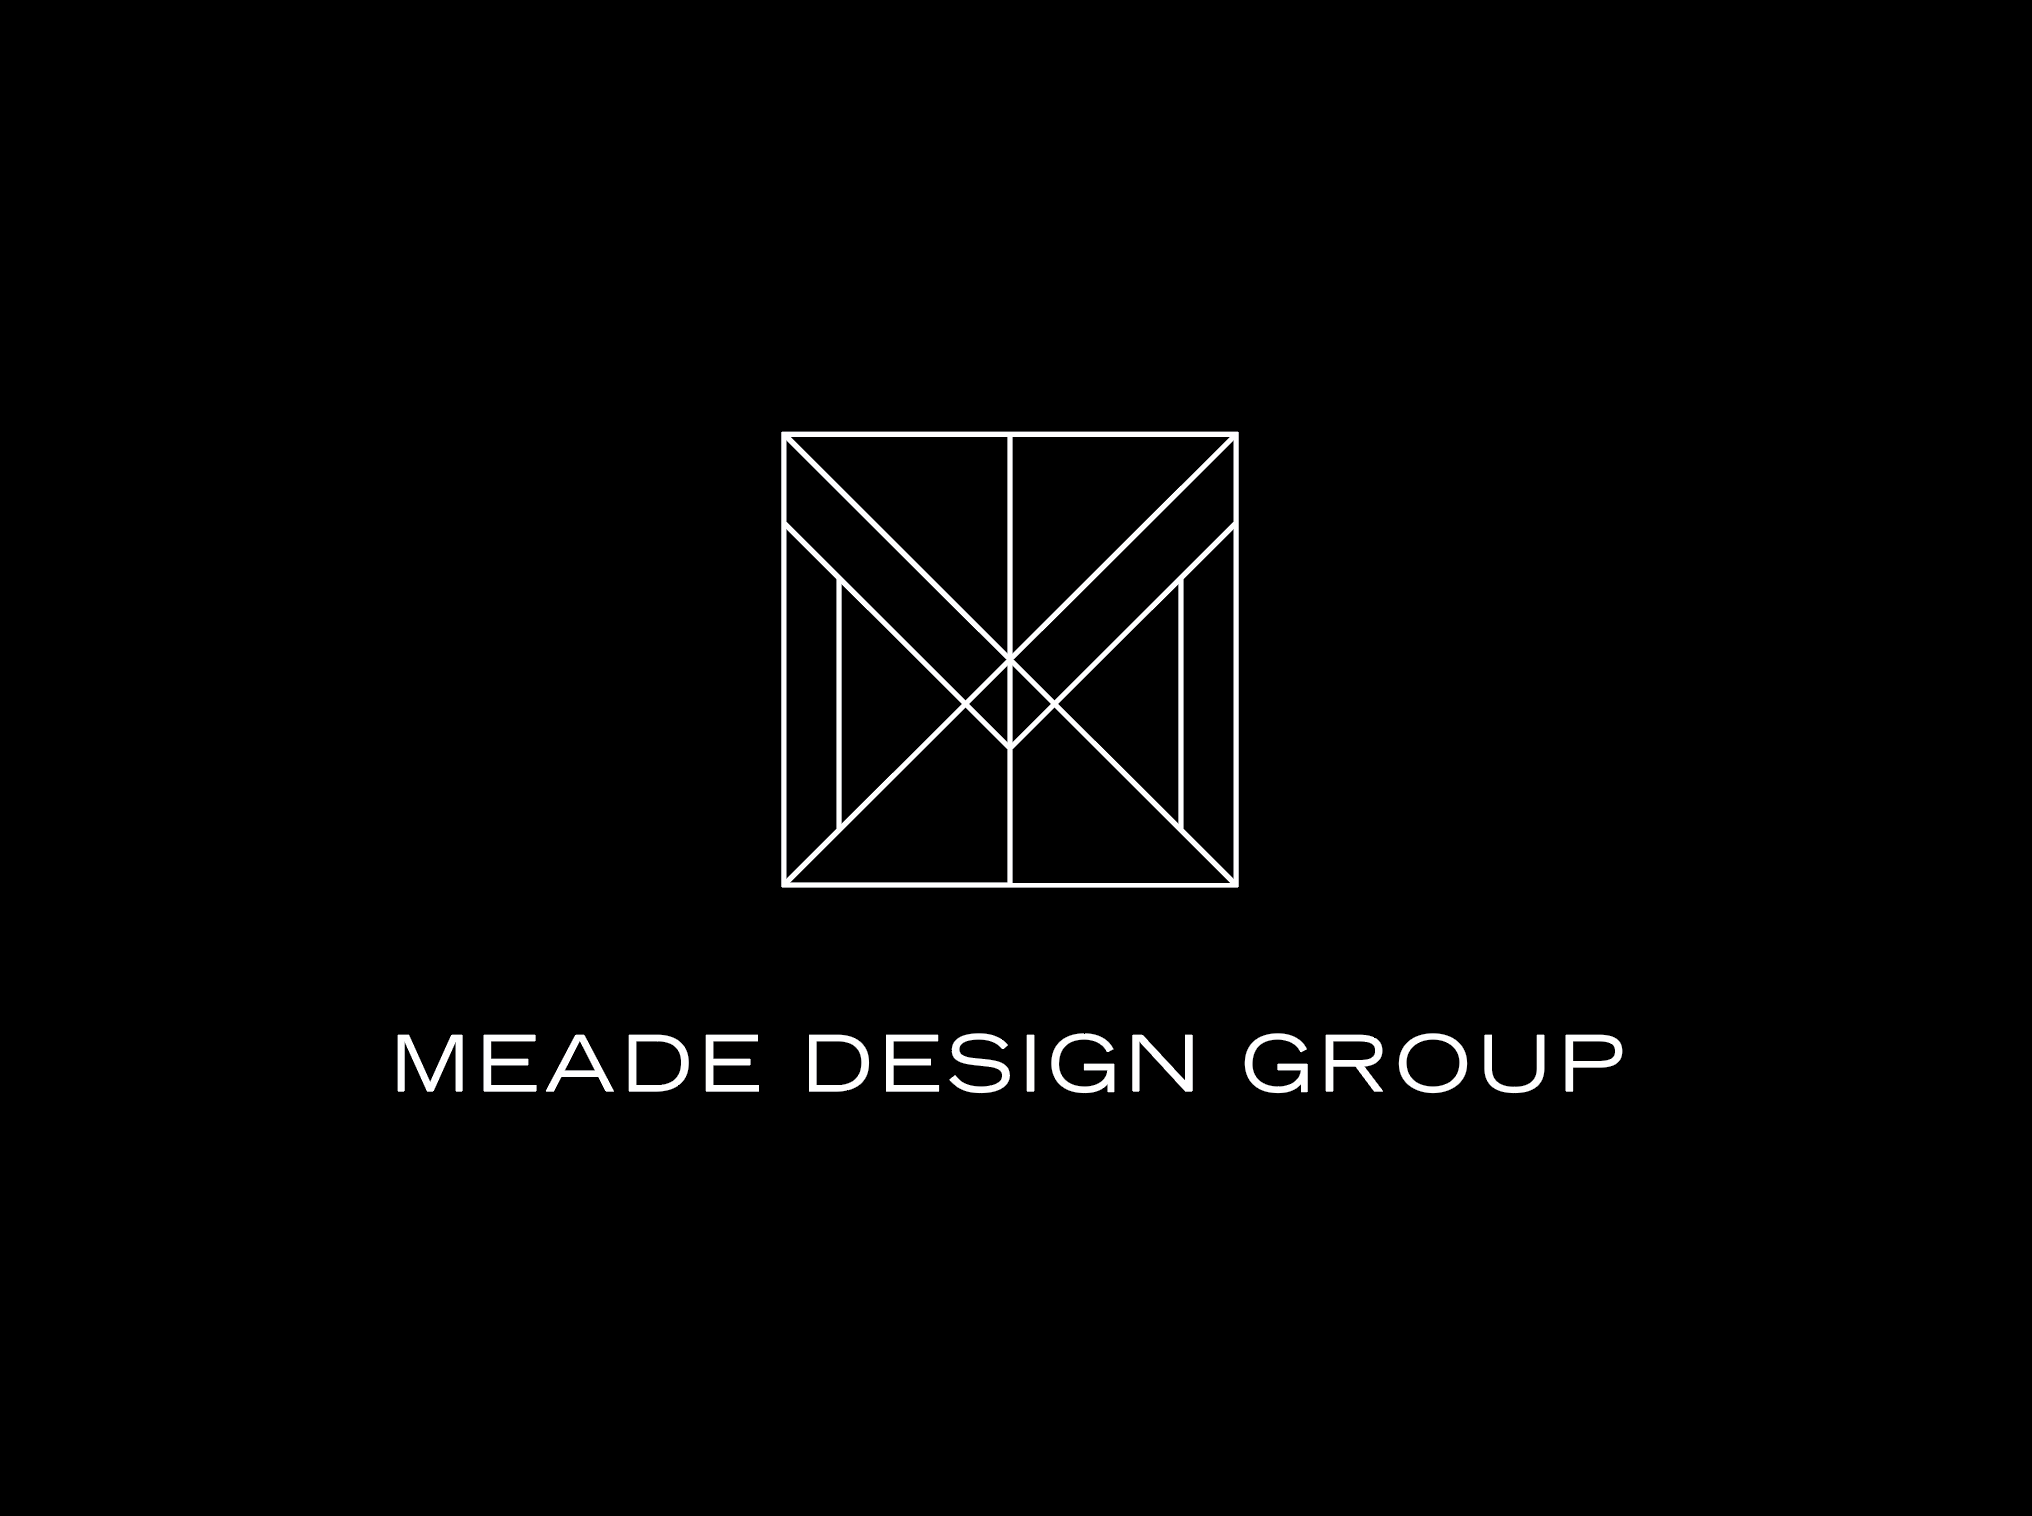 Meade Design Group